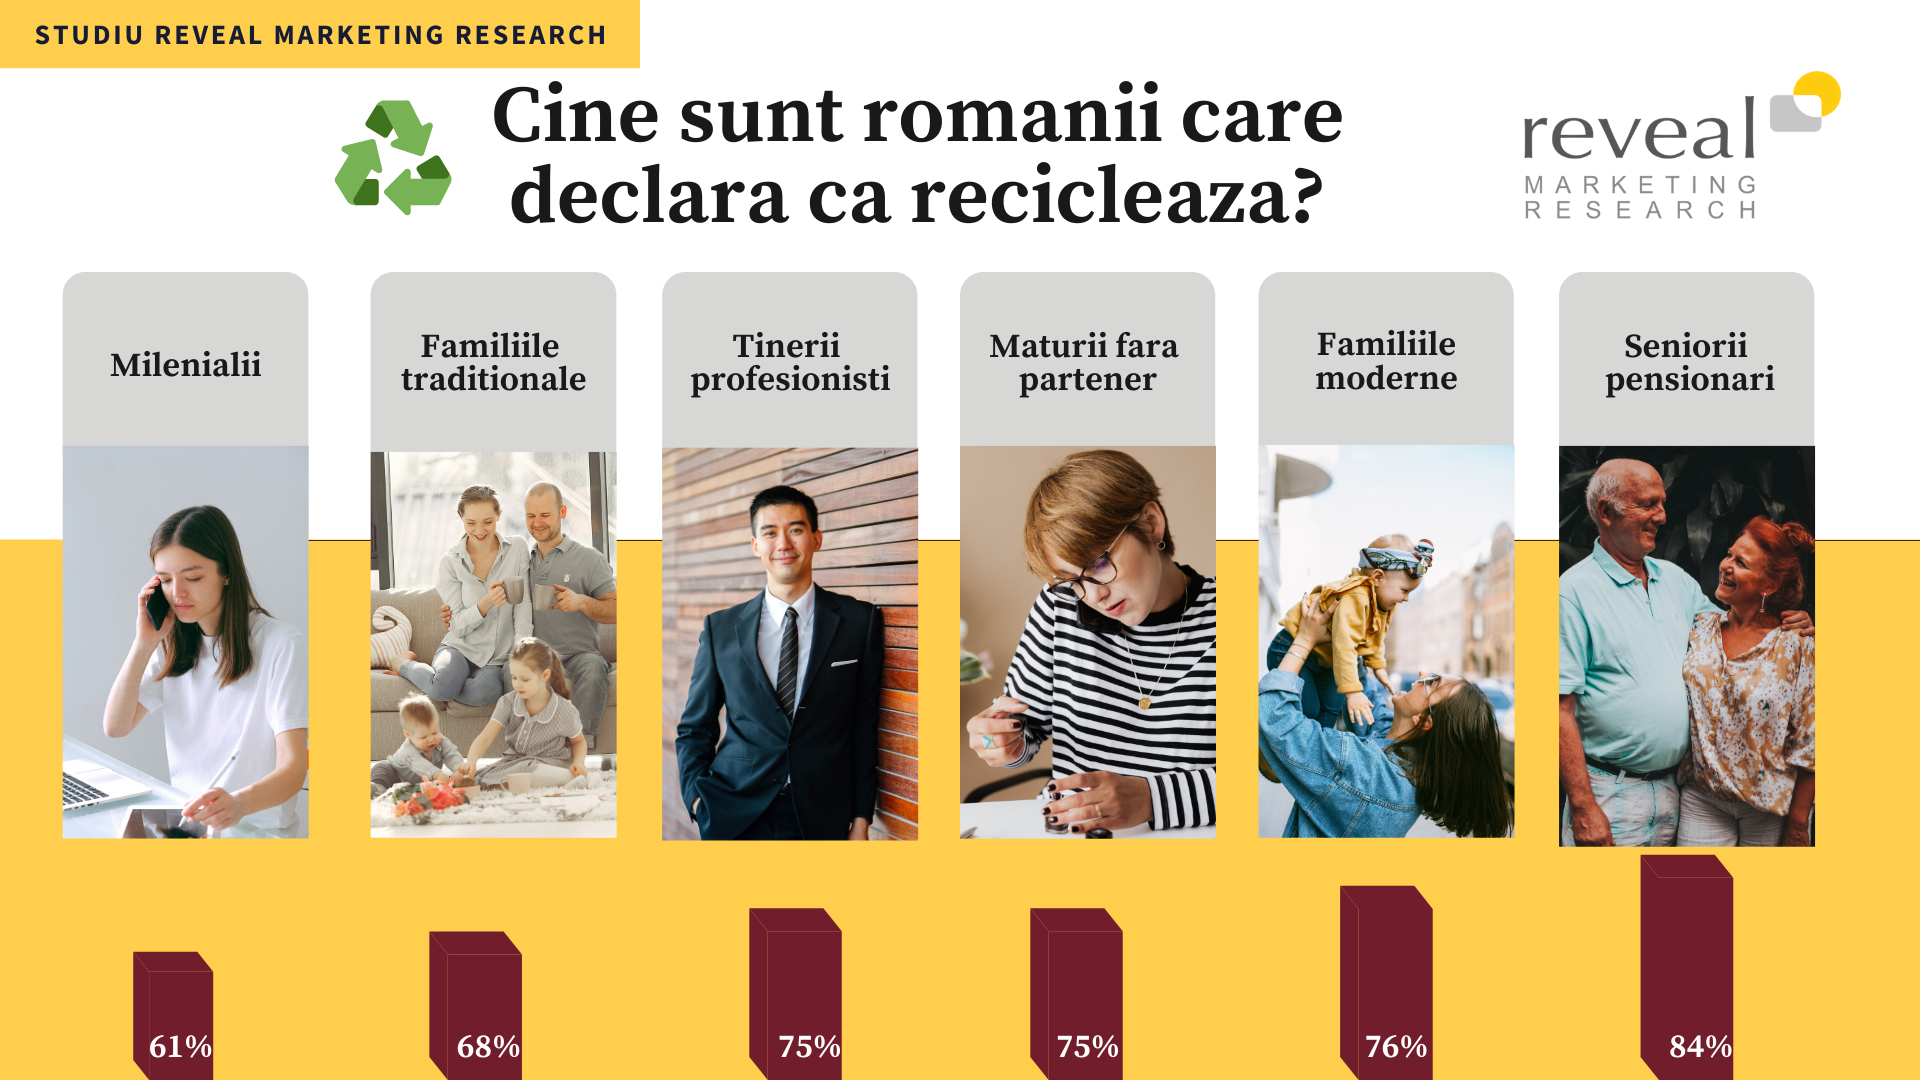 Reciclarea și comportamentul românilor: Pensionarii se declară cei mai preocupați de colectarea selectivă, comparativ cu tinerii